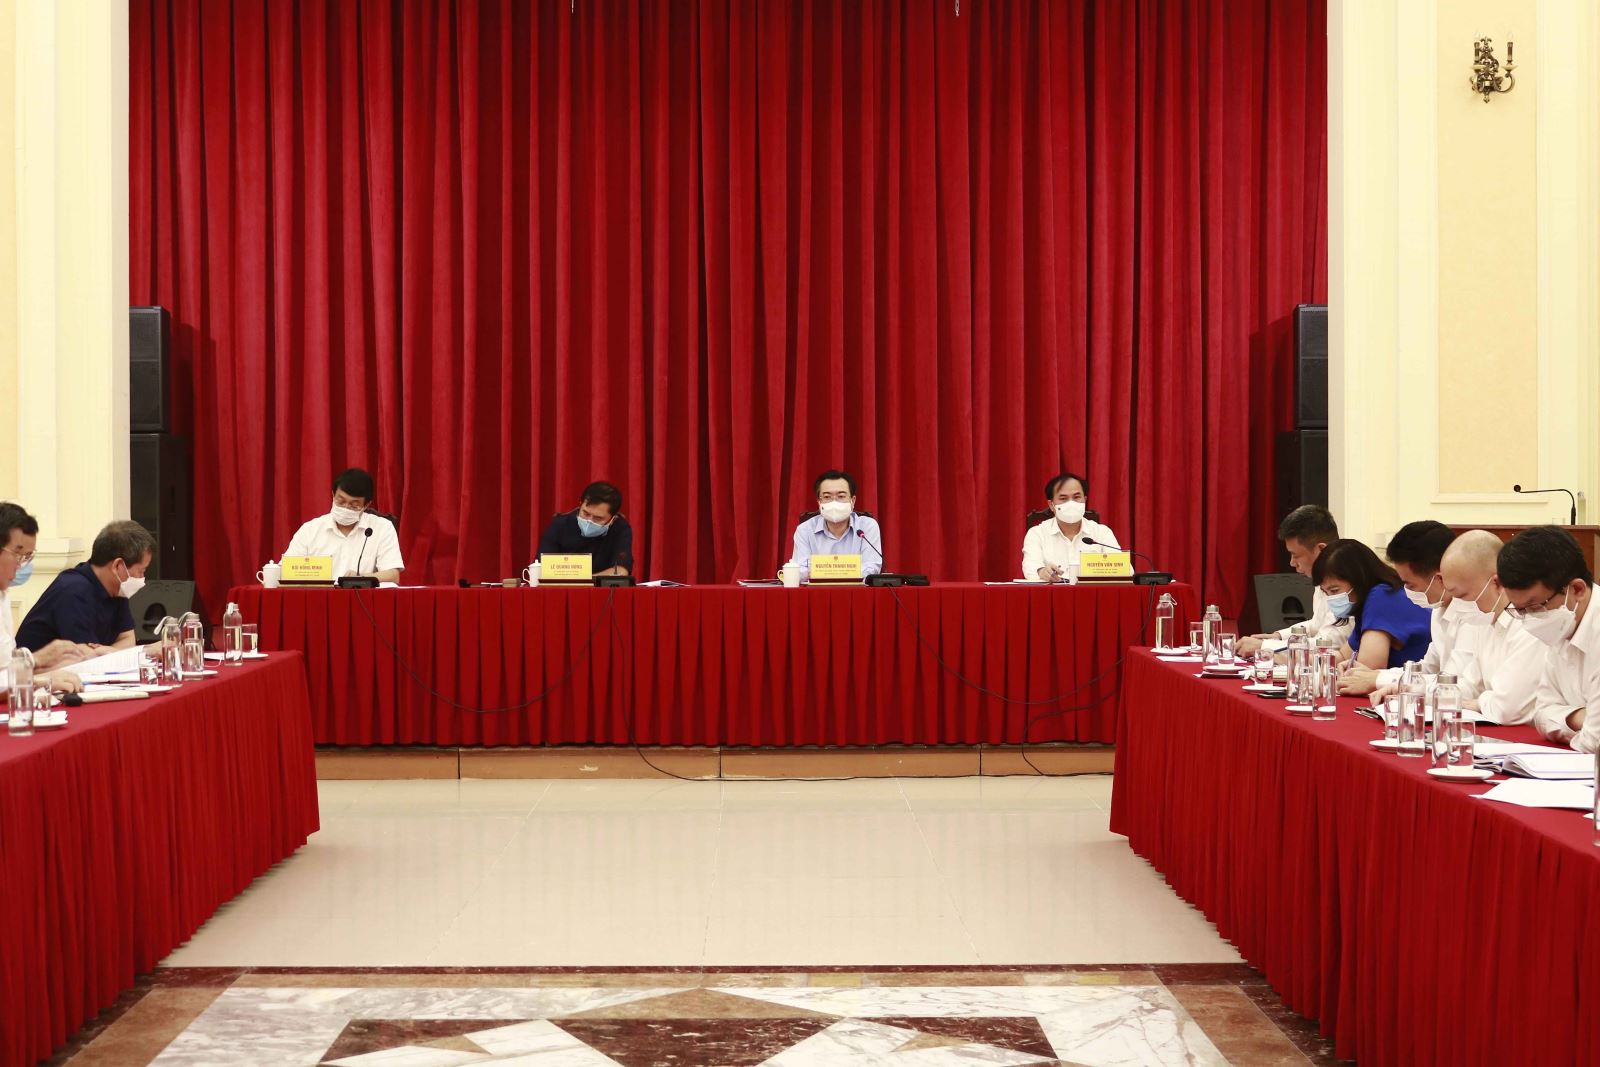 Tham dự Hội nghị có các đồng chí Thứ trưởng: Lê Quang Hùng, Nguyễn Văn Sinh, Bùi Hồng Minh; và thủ trưởng các cơ quan, đơn vị trực thuộc cơ quan Bộ Xây dựng